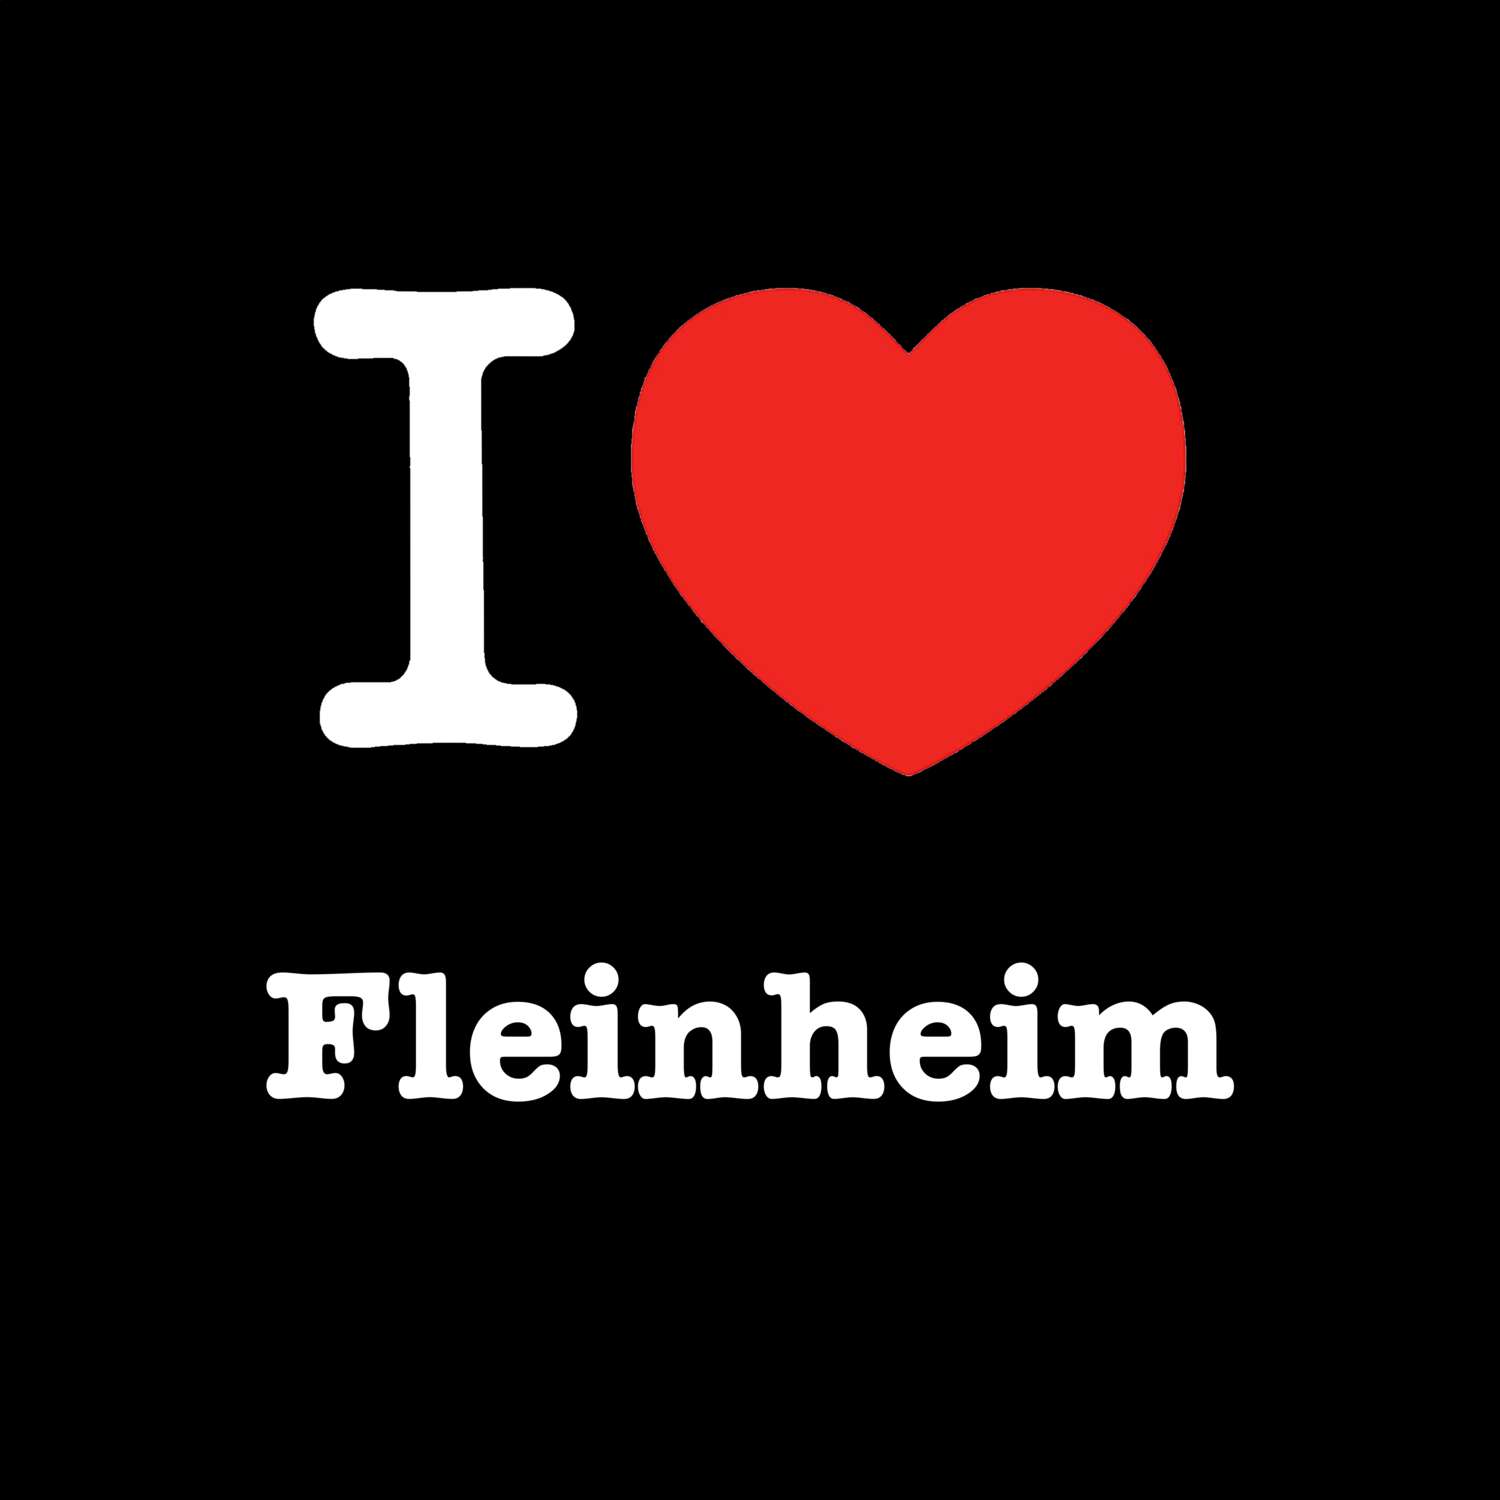 Fleinheim T-Shirt »I love«